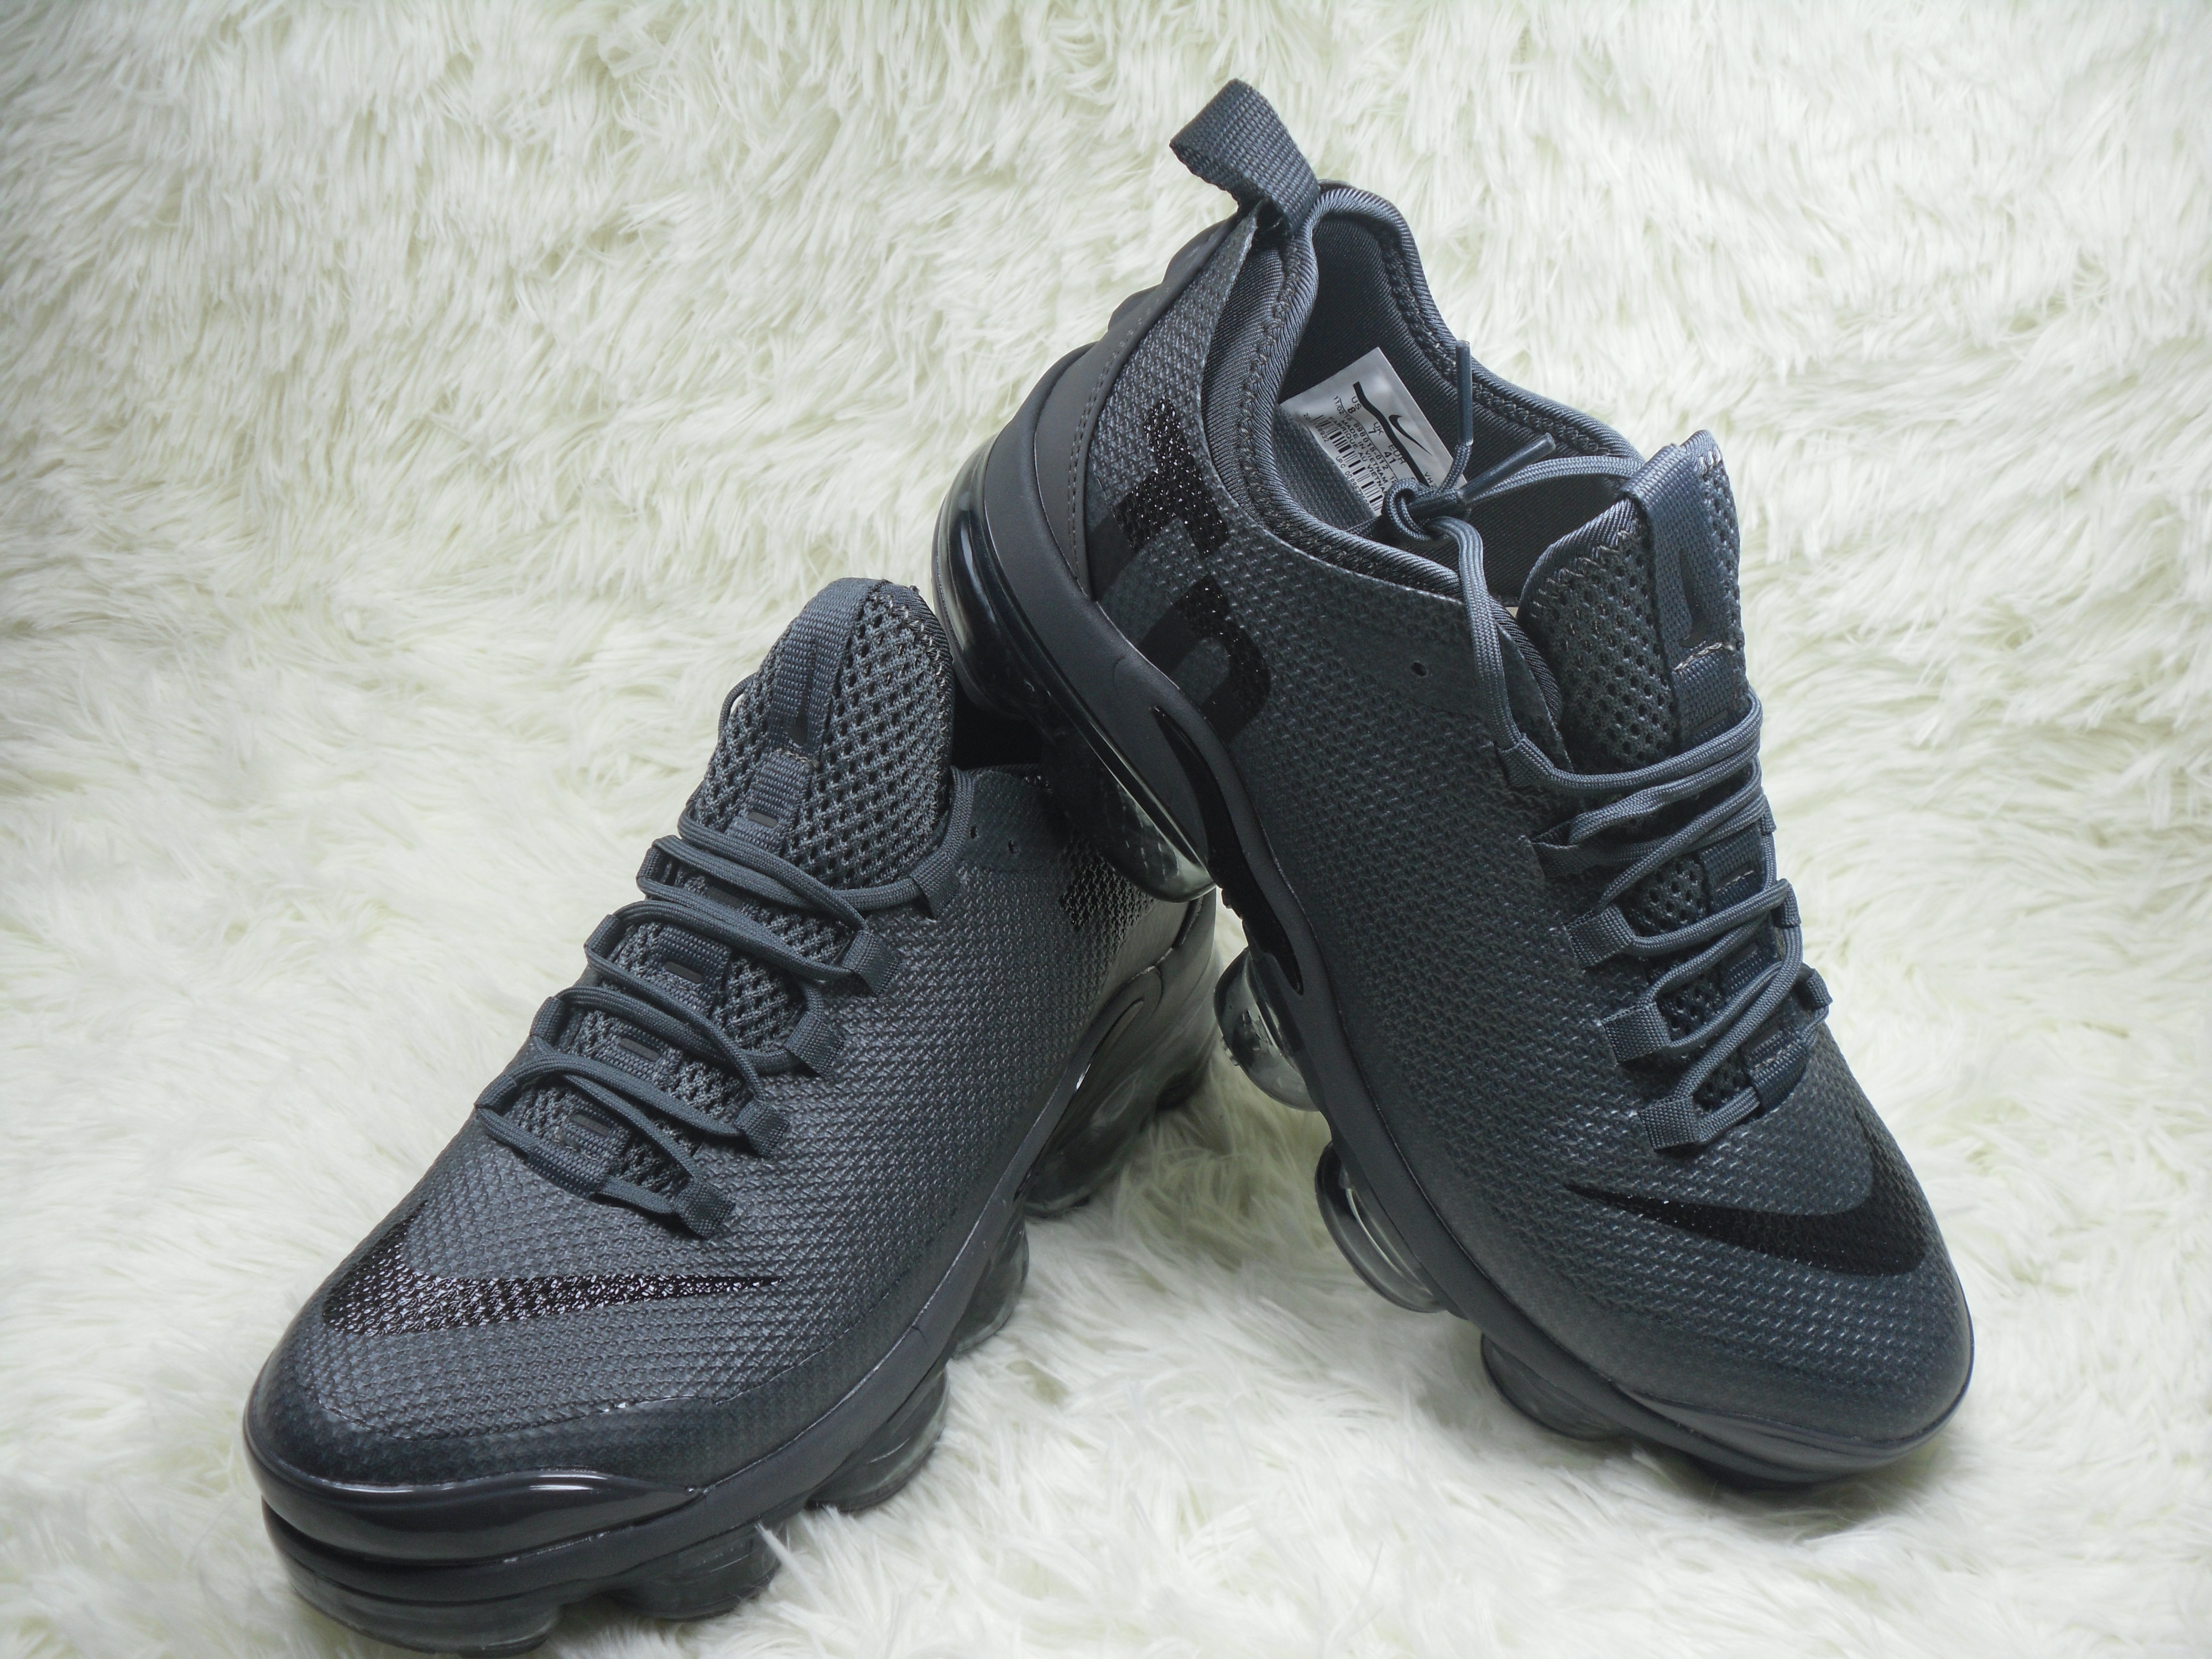 Nike Air Max Plus TN Summer Carbon Black Shoes